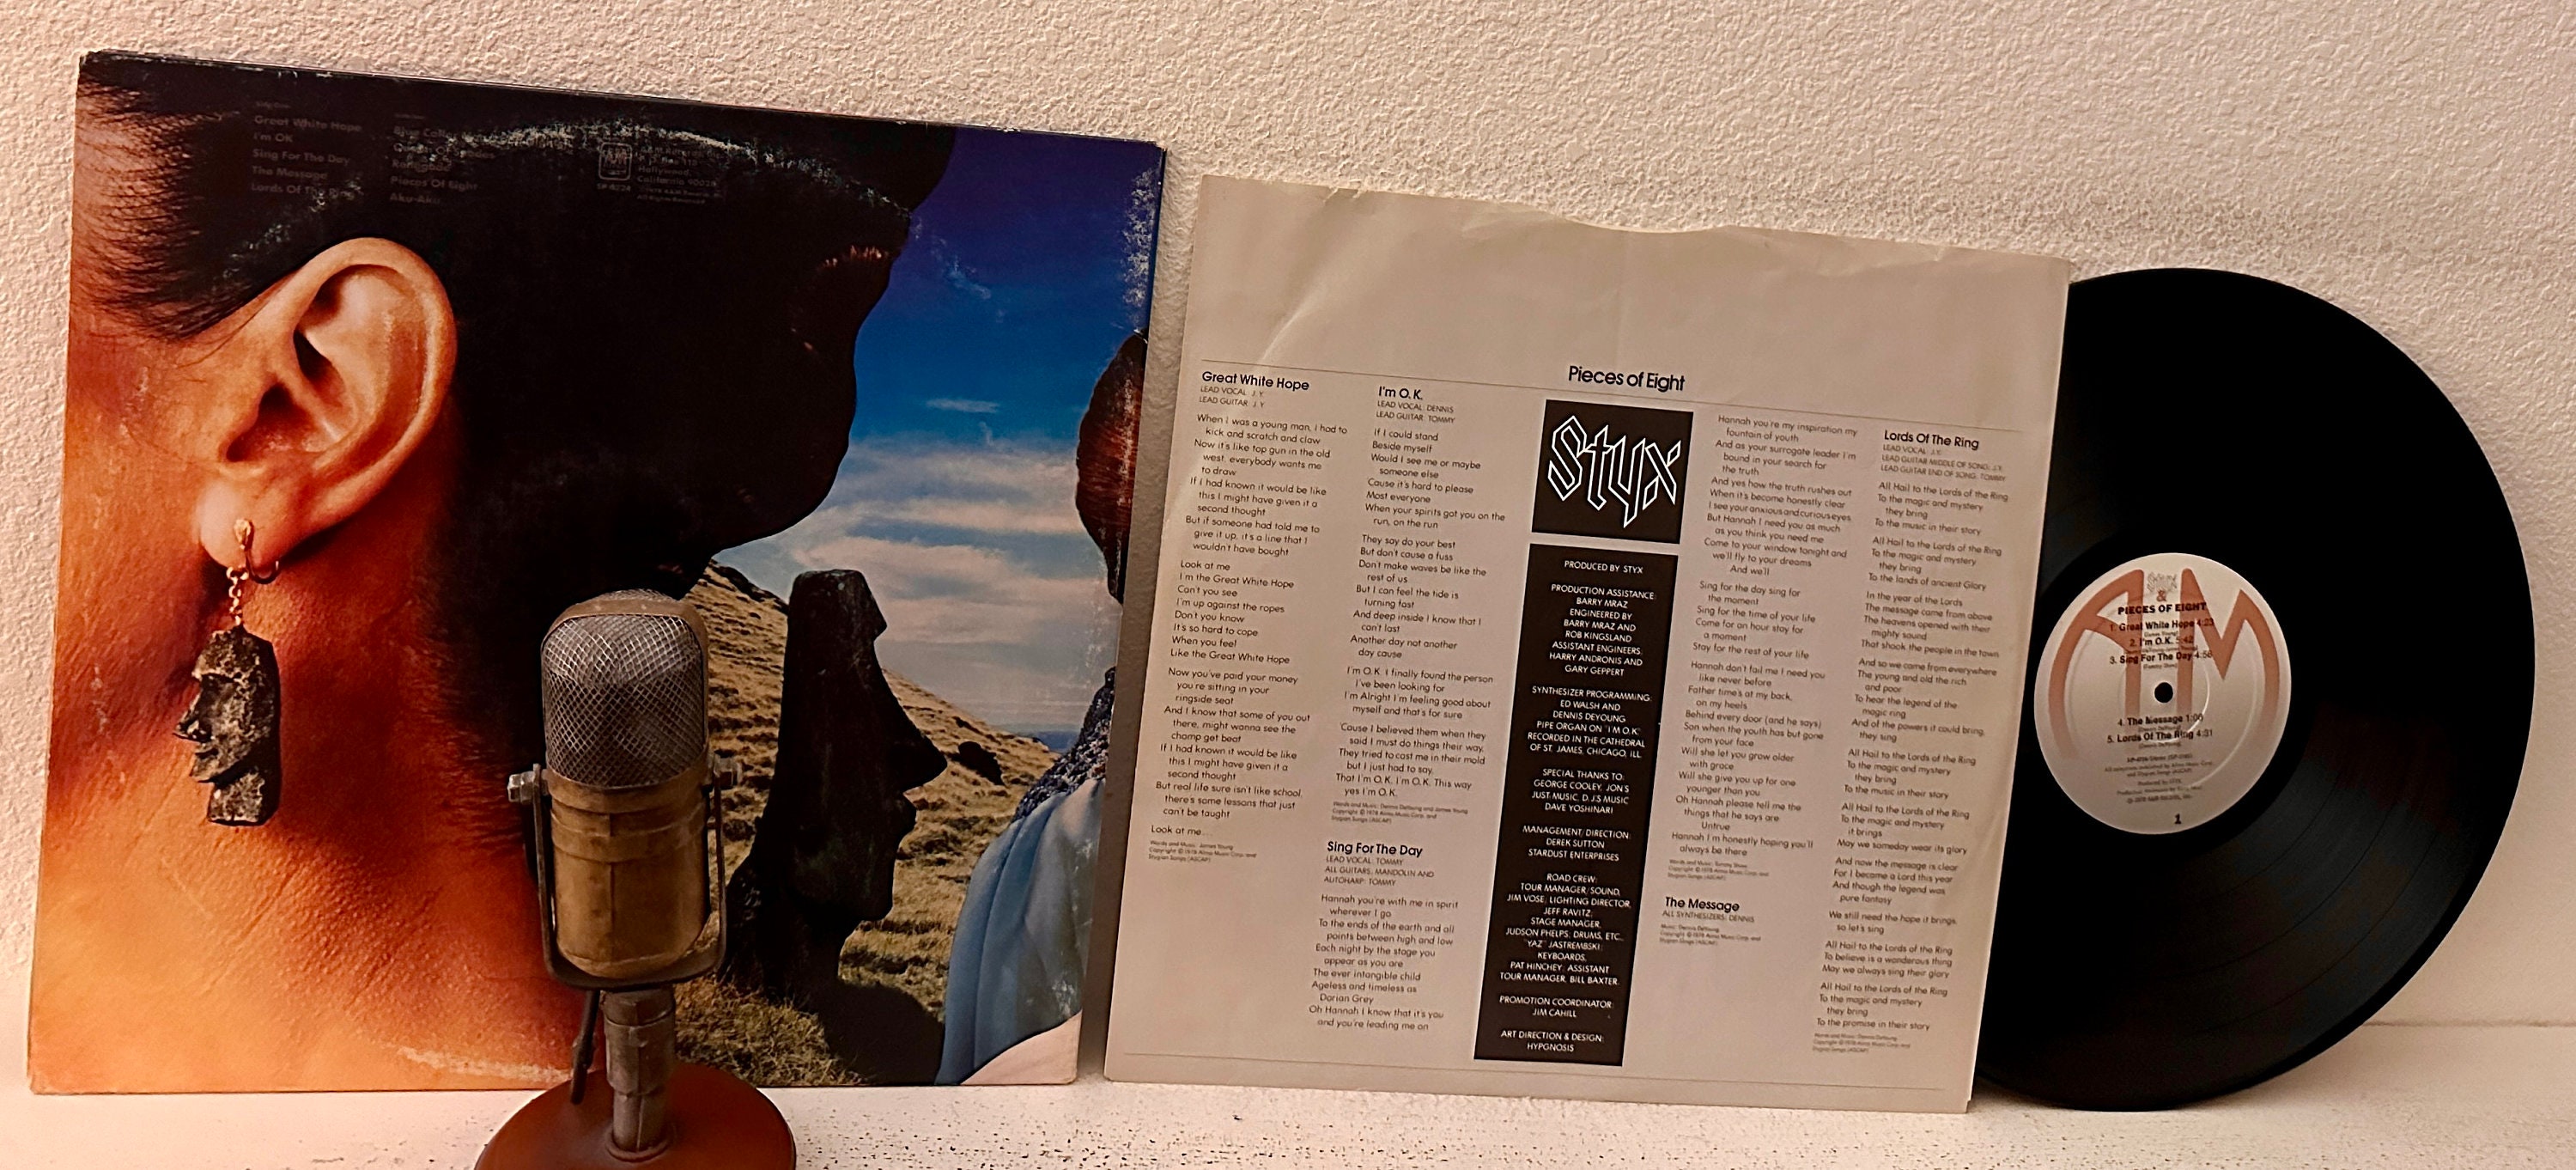 Álbum de discos de vinilo de Supertramp Años 70 Arte pop británico de rock  progresivo Roger Hodgson Supertramp reedición de A&M de 1981 con It's A  Long Road -  España